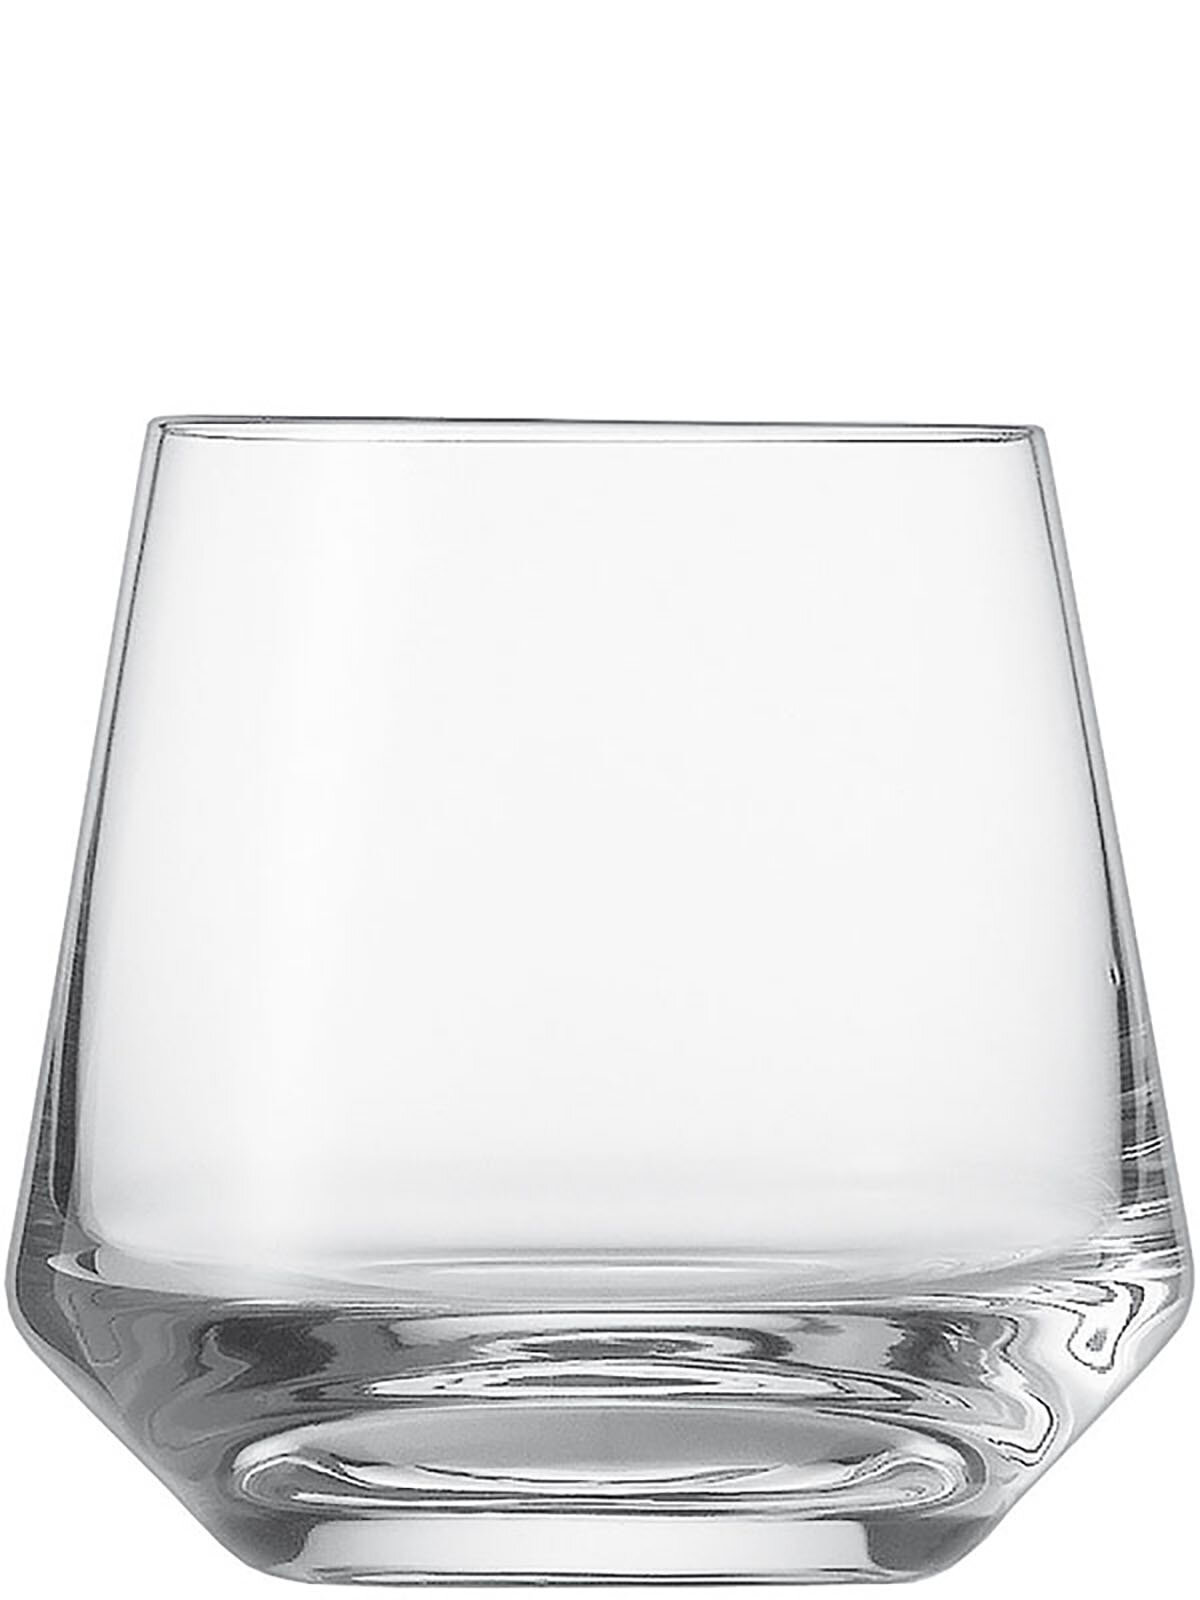 Олд фэшн Белфеста (Пьюр), Zwiesel Glas, хр. стекло, 305 мл